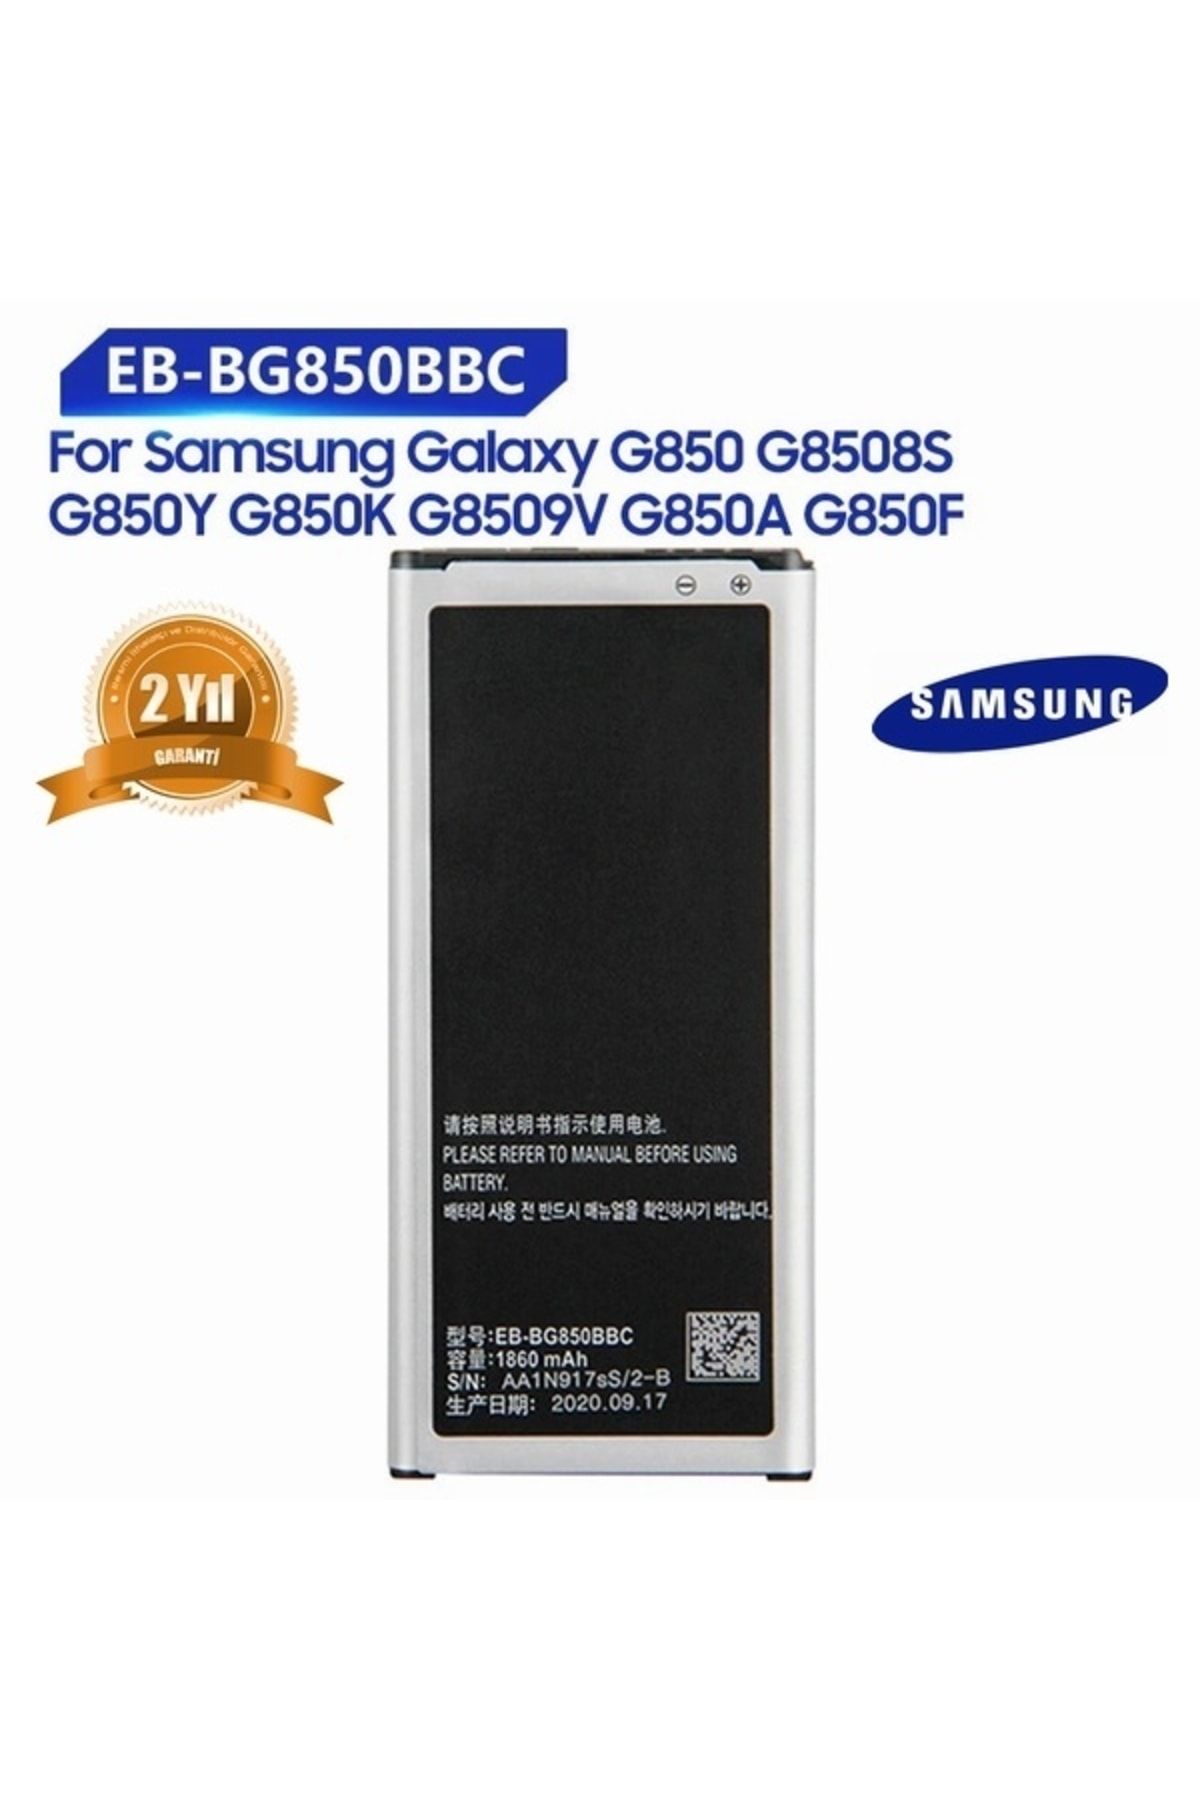 Genel Markalar Samsung Galaxy Alpha G8509v Eb-bg850bbc Eb-bg850bbu Eb-bg850bbe 1860mah Batarya 2 Yıl Garanti